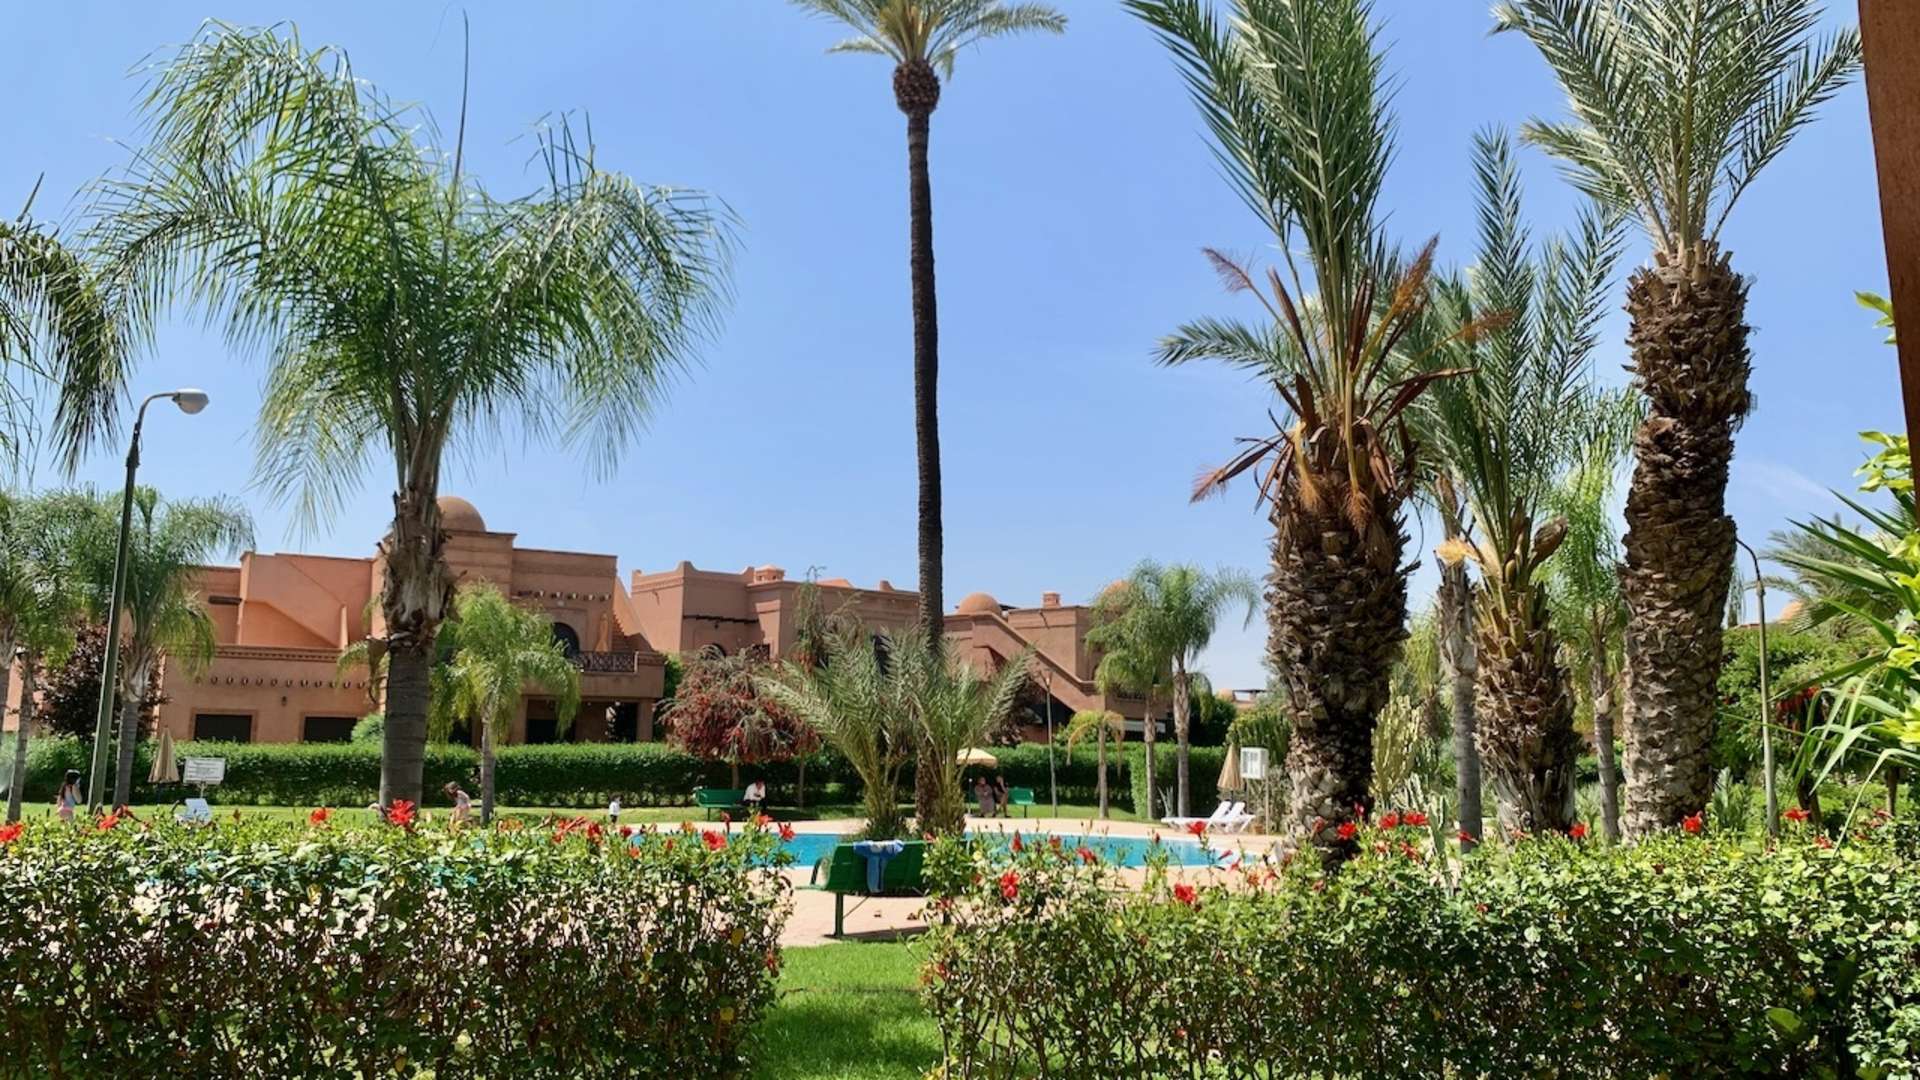 Vente,Appartement,Vente Appartement Marrakech Rez-de-Jardin 2 chambres salon. Résidence sécurisée avec piscine,Marrakech,Atlas Golf Resort 